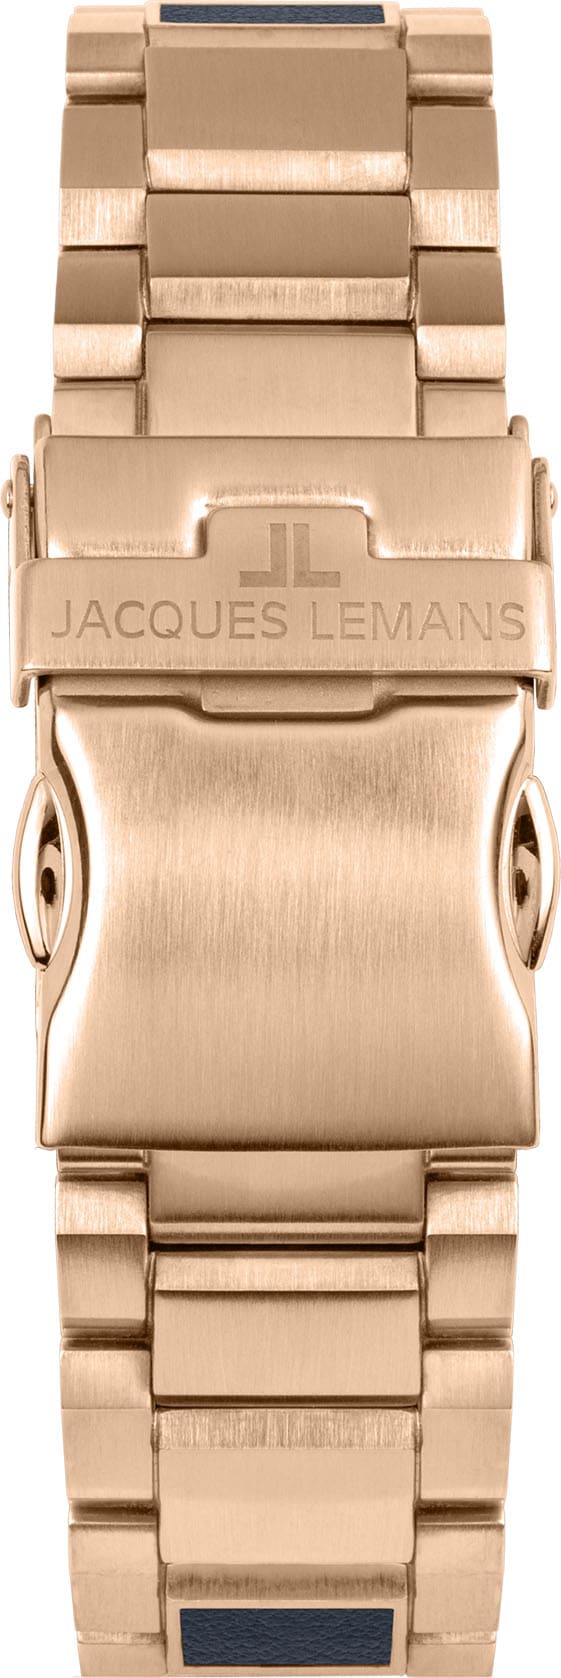 Jacques Lemans Solaruhr »Eco Power, 1-2116F« im Online-Shop kaufen